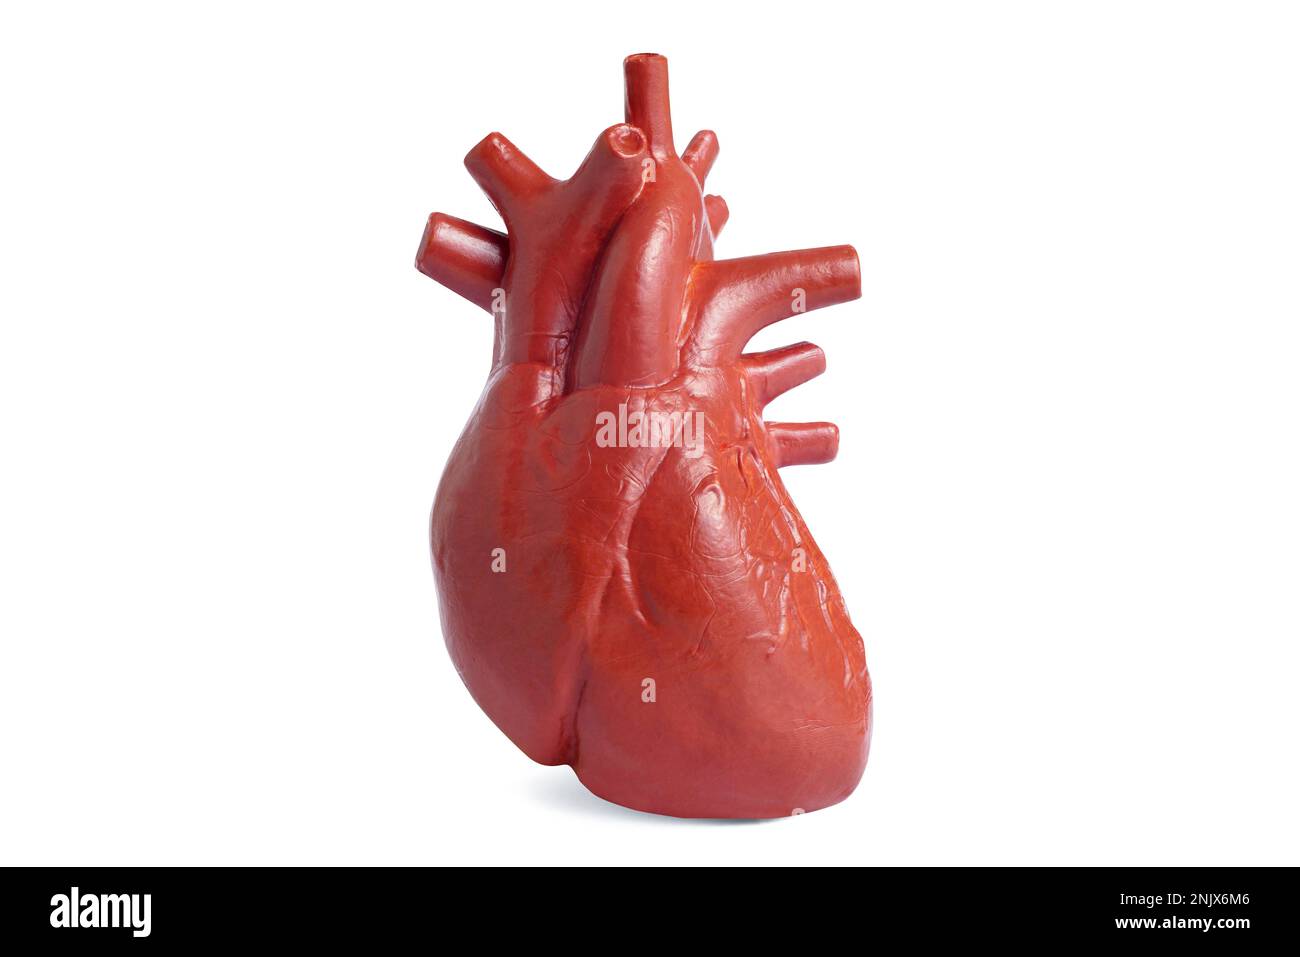 Modello anatomicamente corretto del cuore umano isolato su sfondo bianco. Insegnamento medico con modelli di giocattoli. Foto Stock